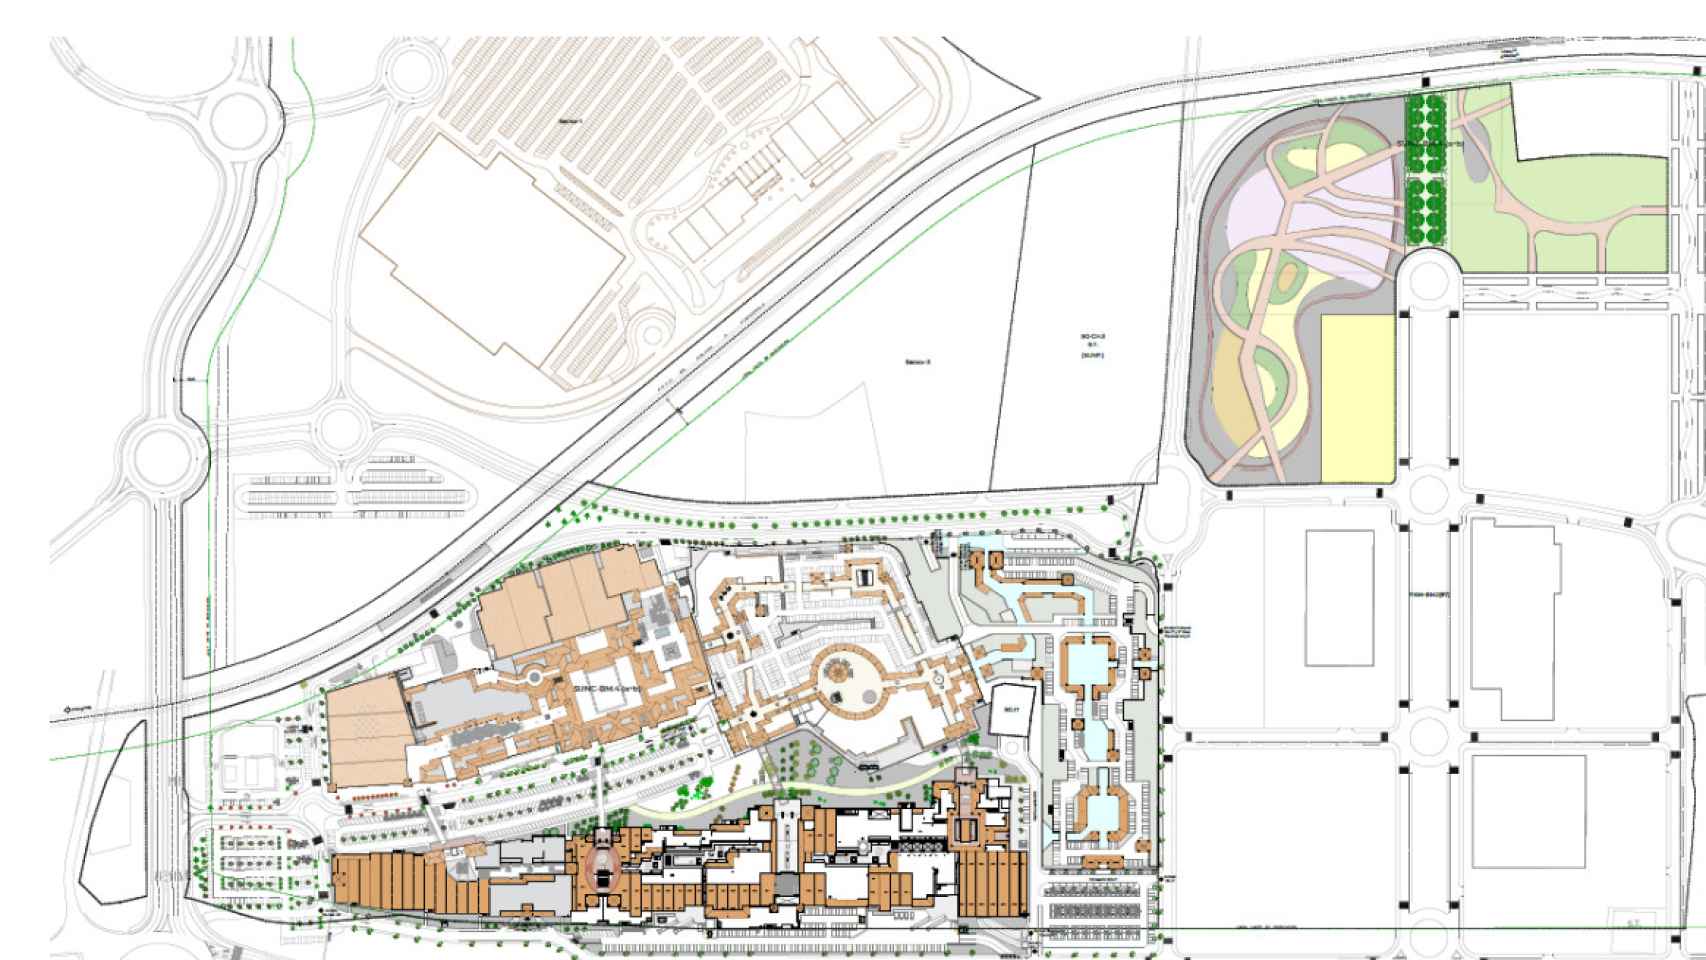 Plano de las zonas de ampliación del centro comercial.